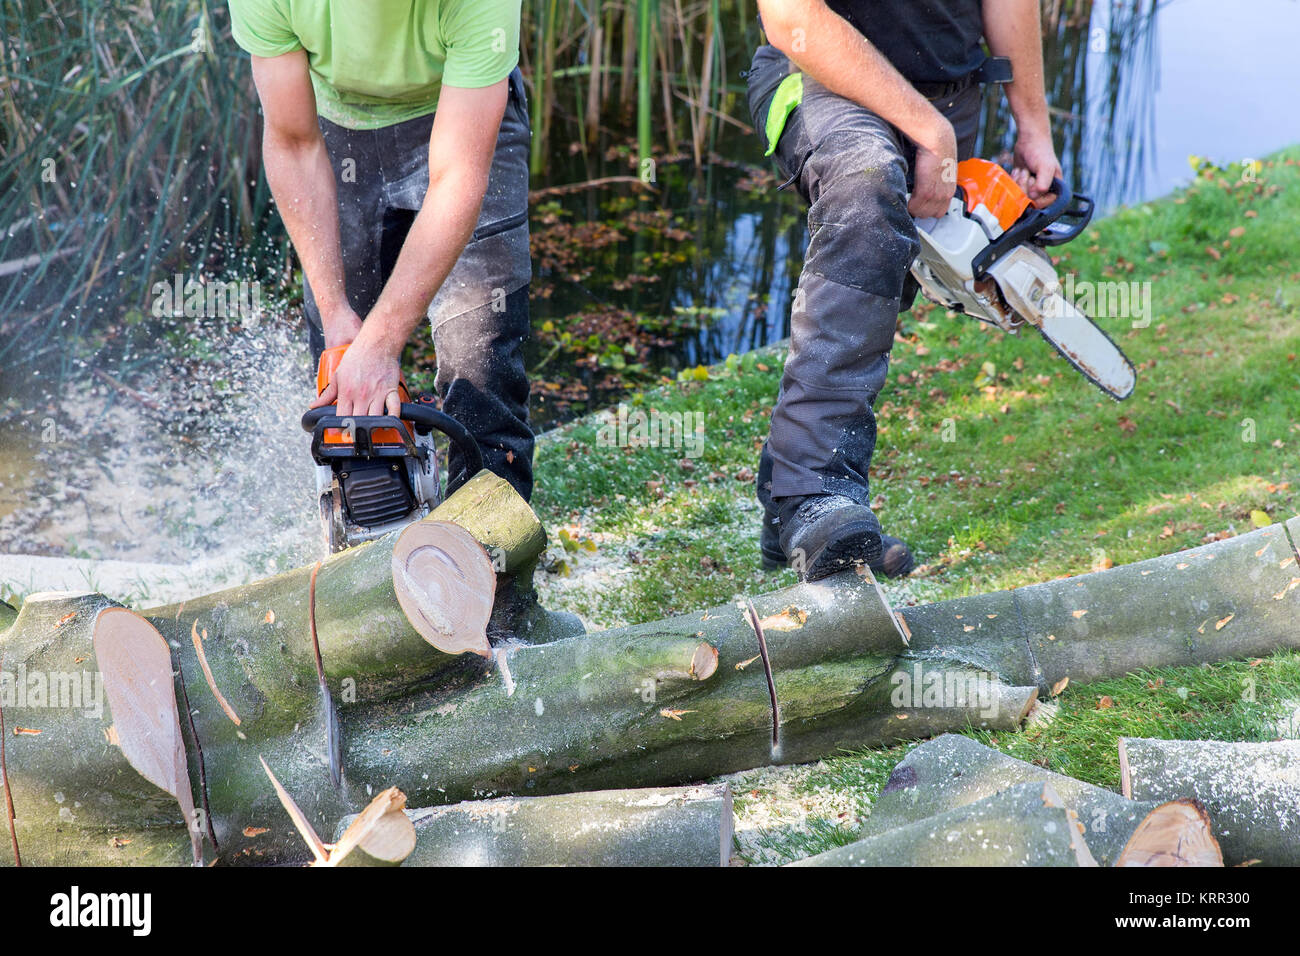 Zwei Gärtner sägen Beech Tree Trunk mit Motor Säge Stockfoto